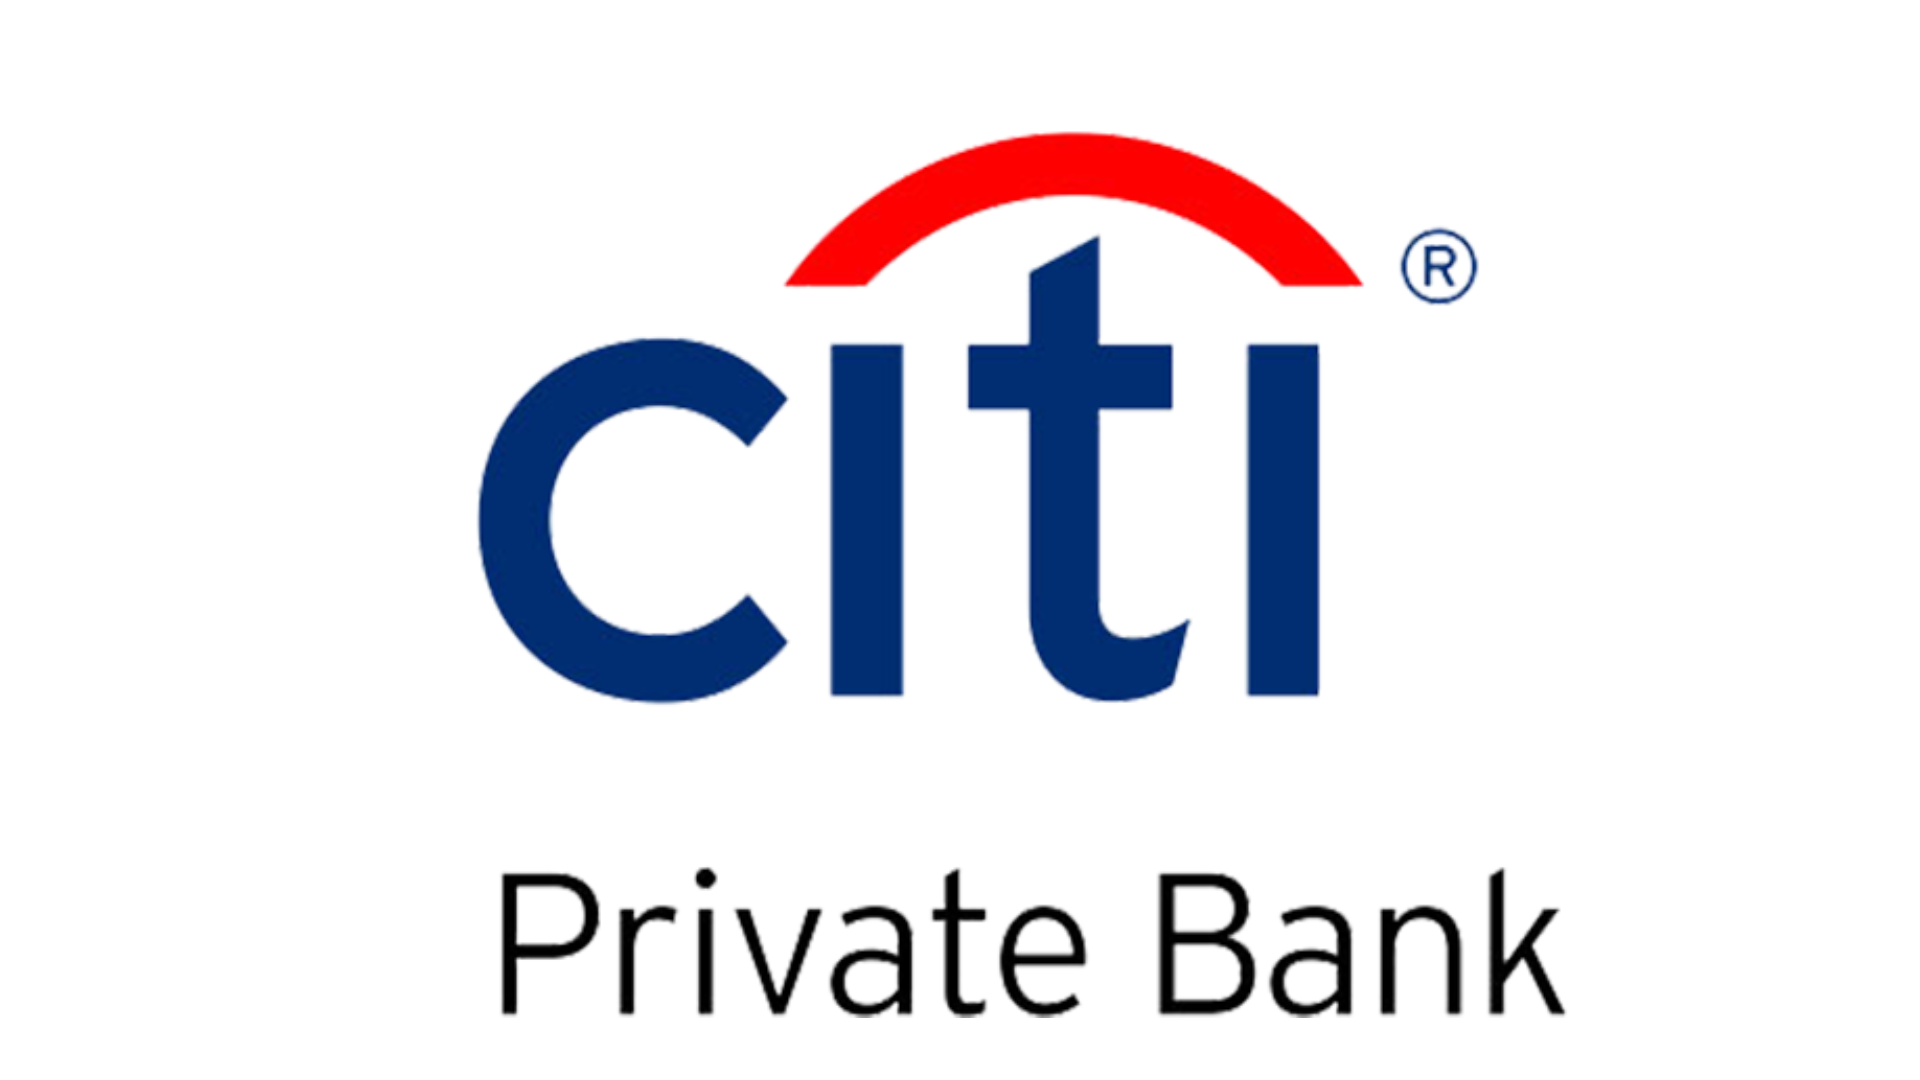 Citi Private Bank logo